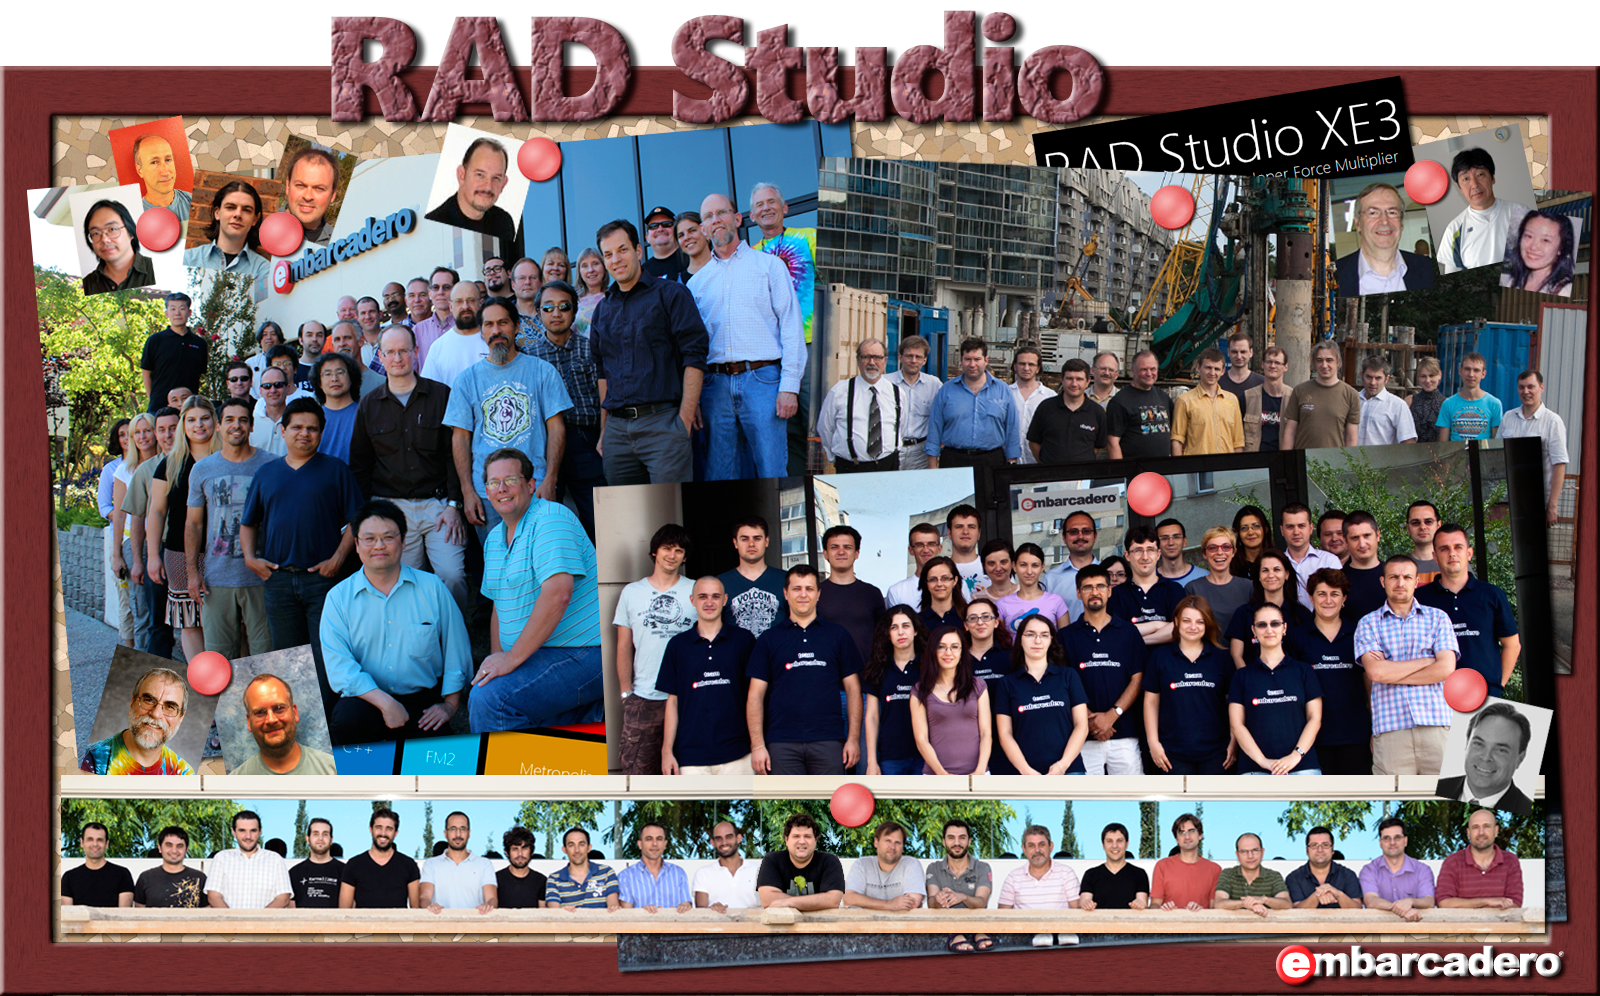 RAD Studio XE3 team image